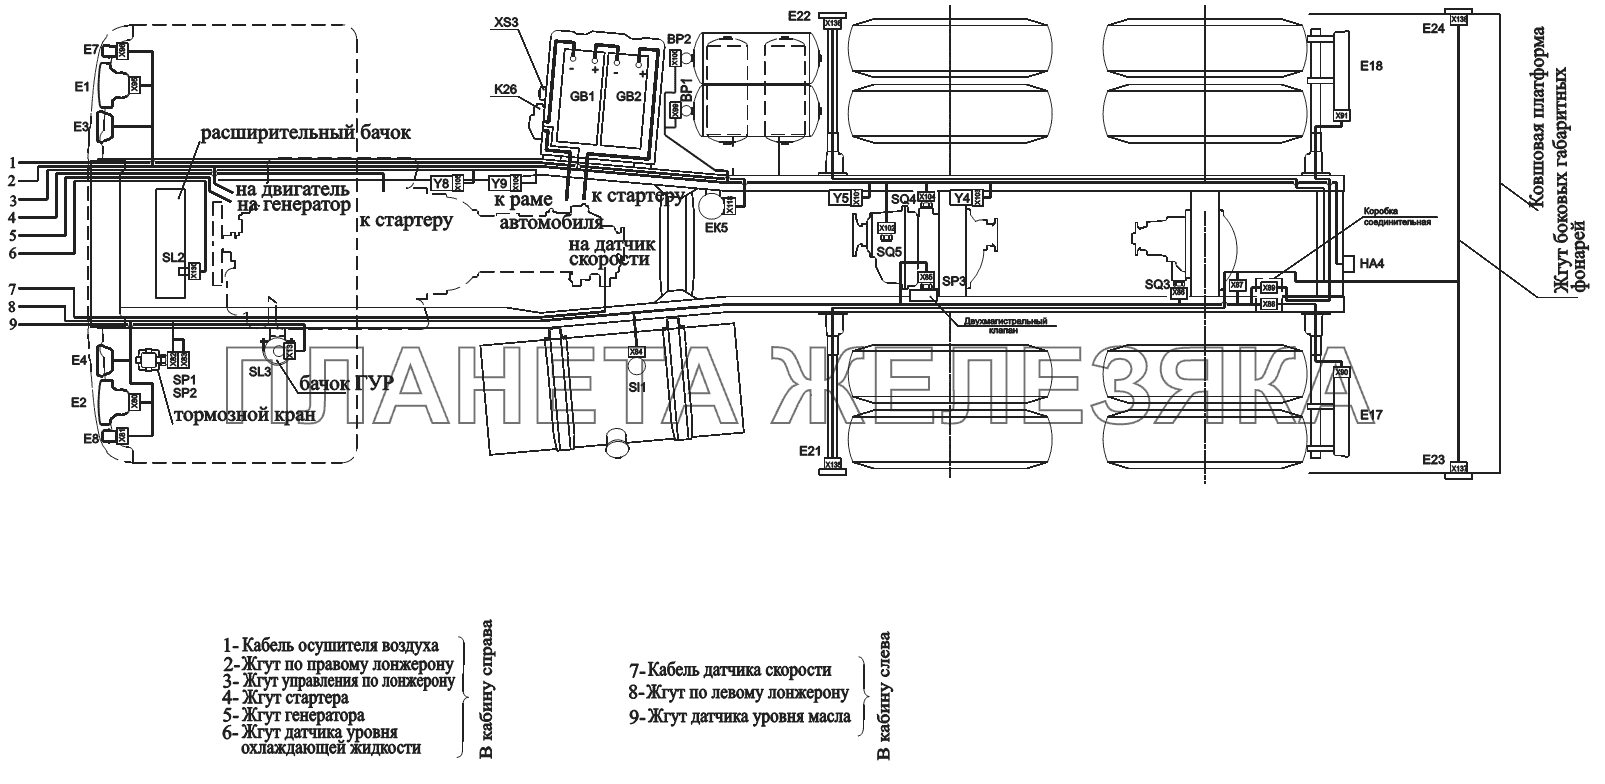 Расположение разъемов и элементов электрооборудования на шасси автомобилей-самосвалов с задней разгрузкой и ковшовой платформой МАЗ-551605